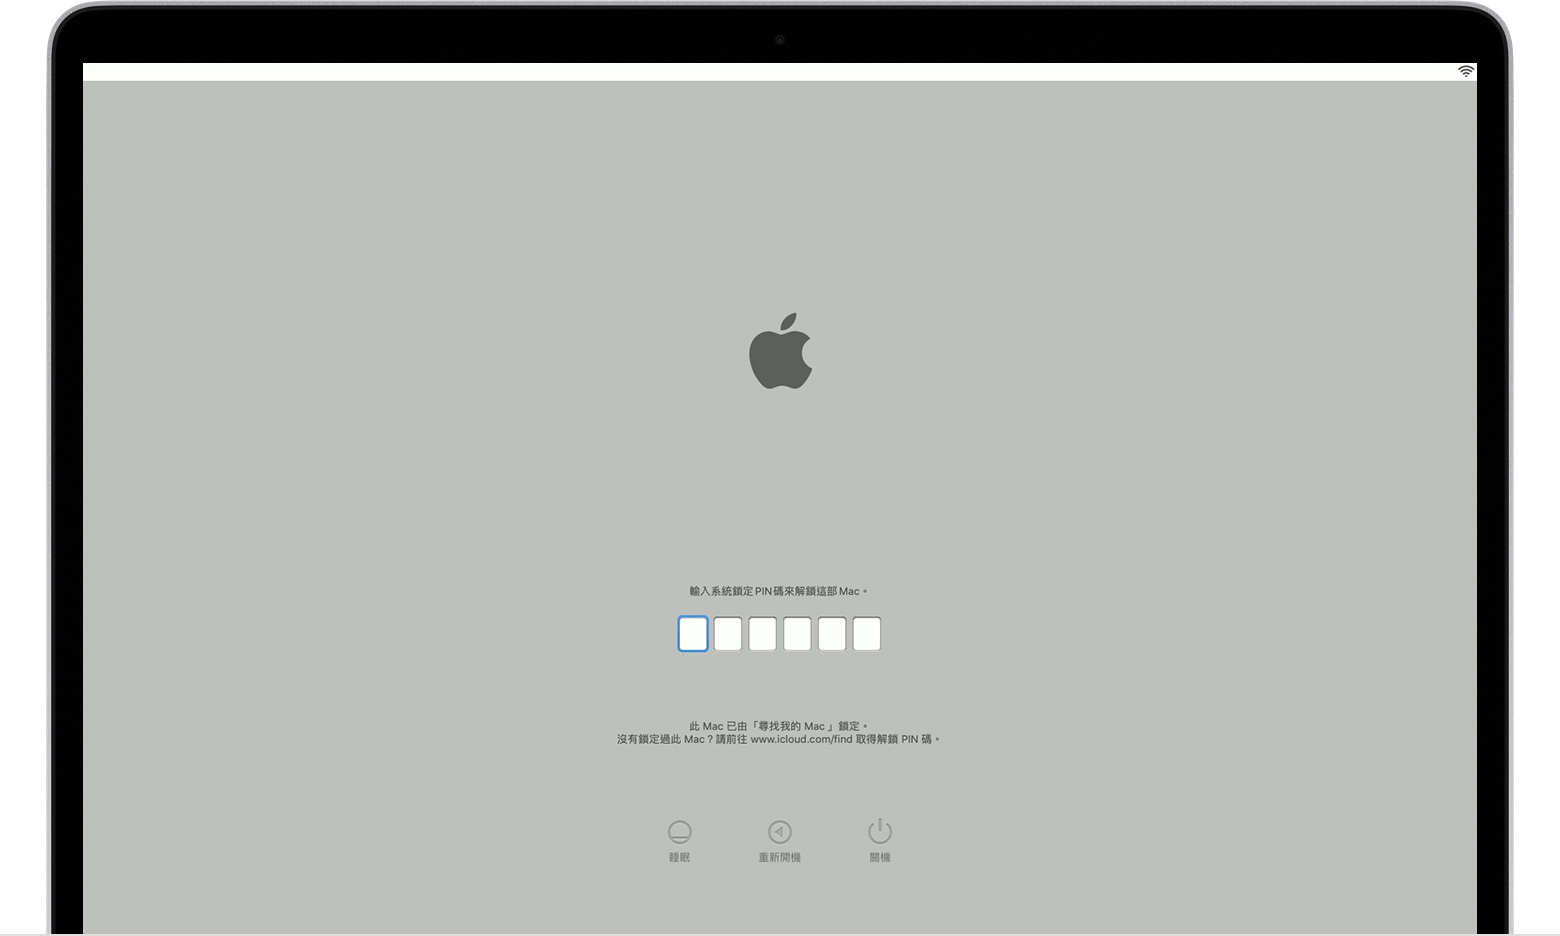 macOS 系統鎖定 PIN 碼的啟動畫面